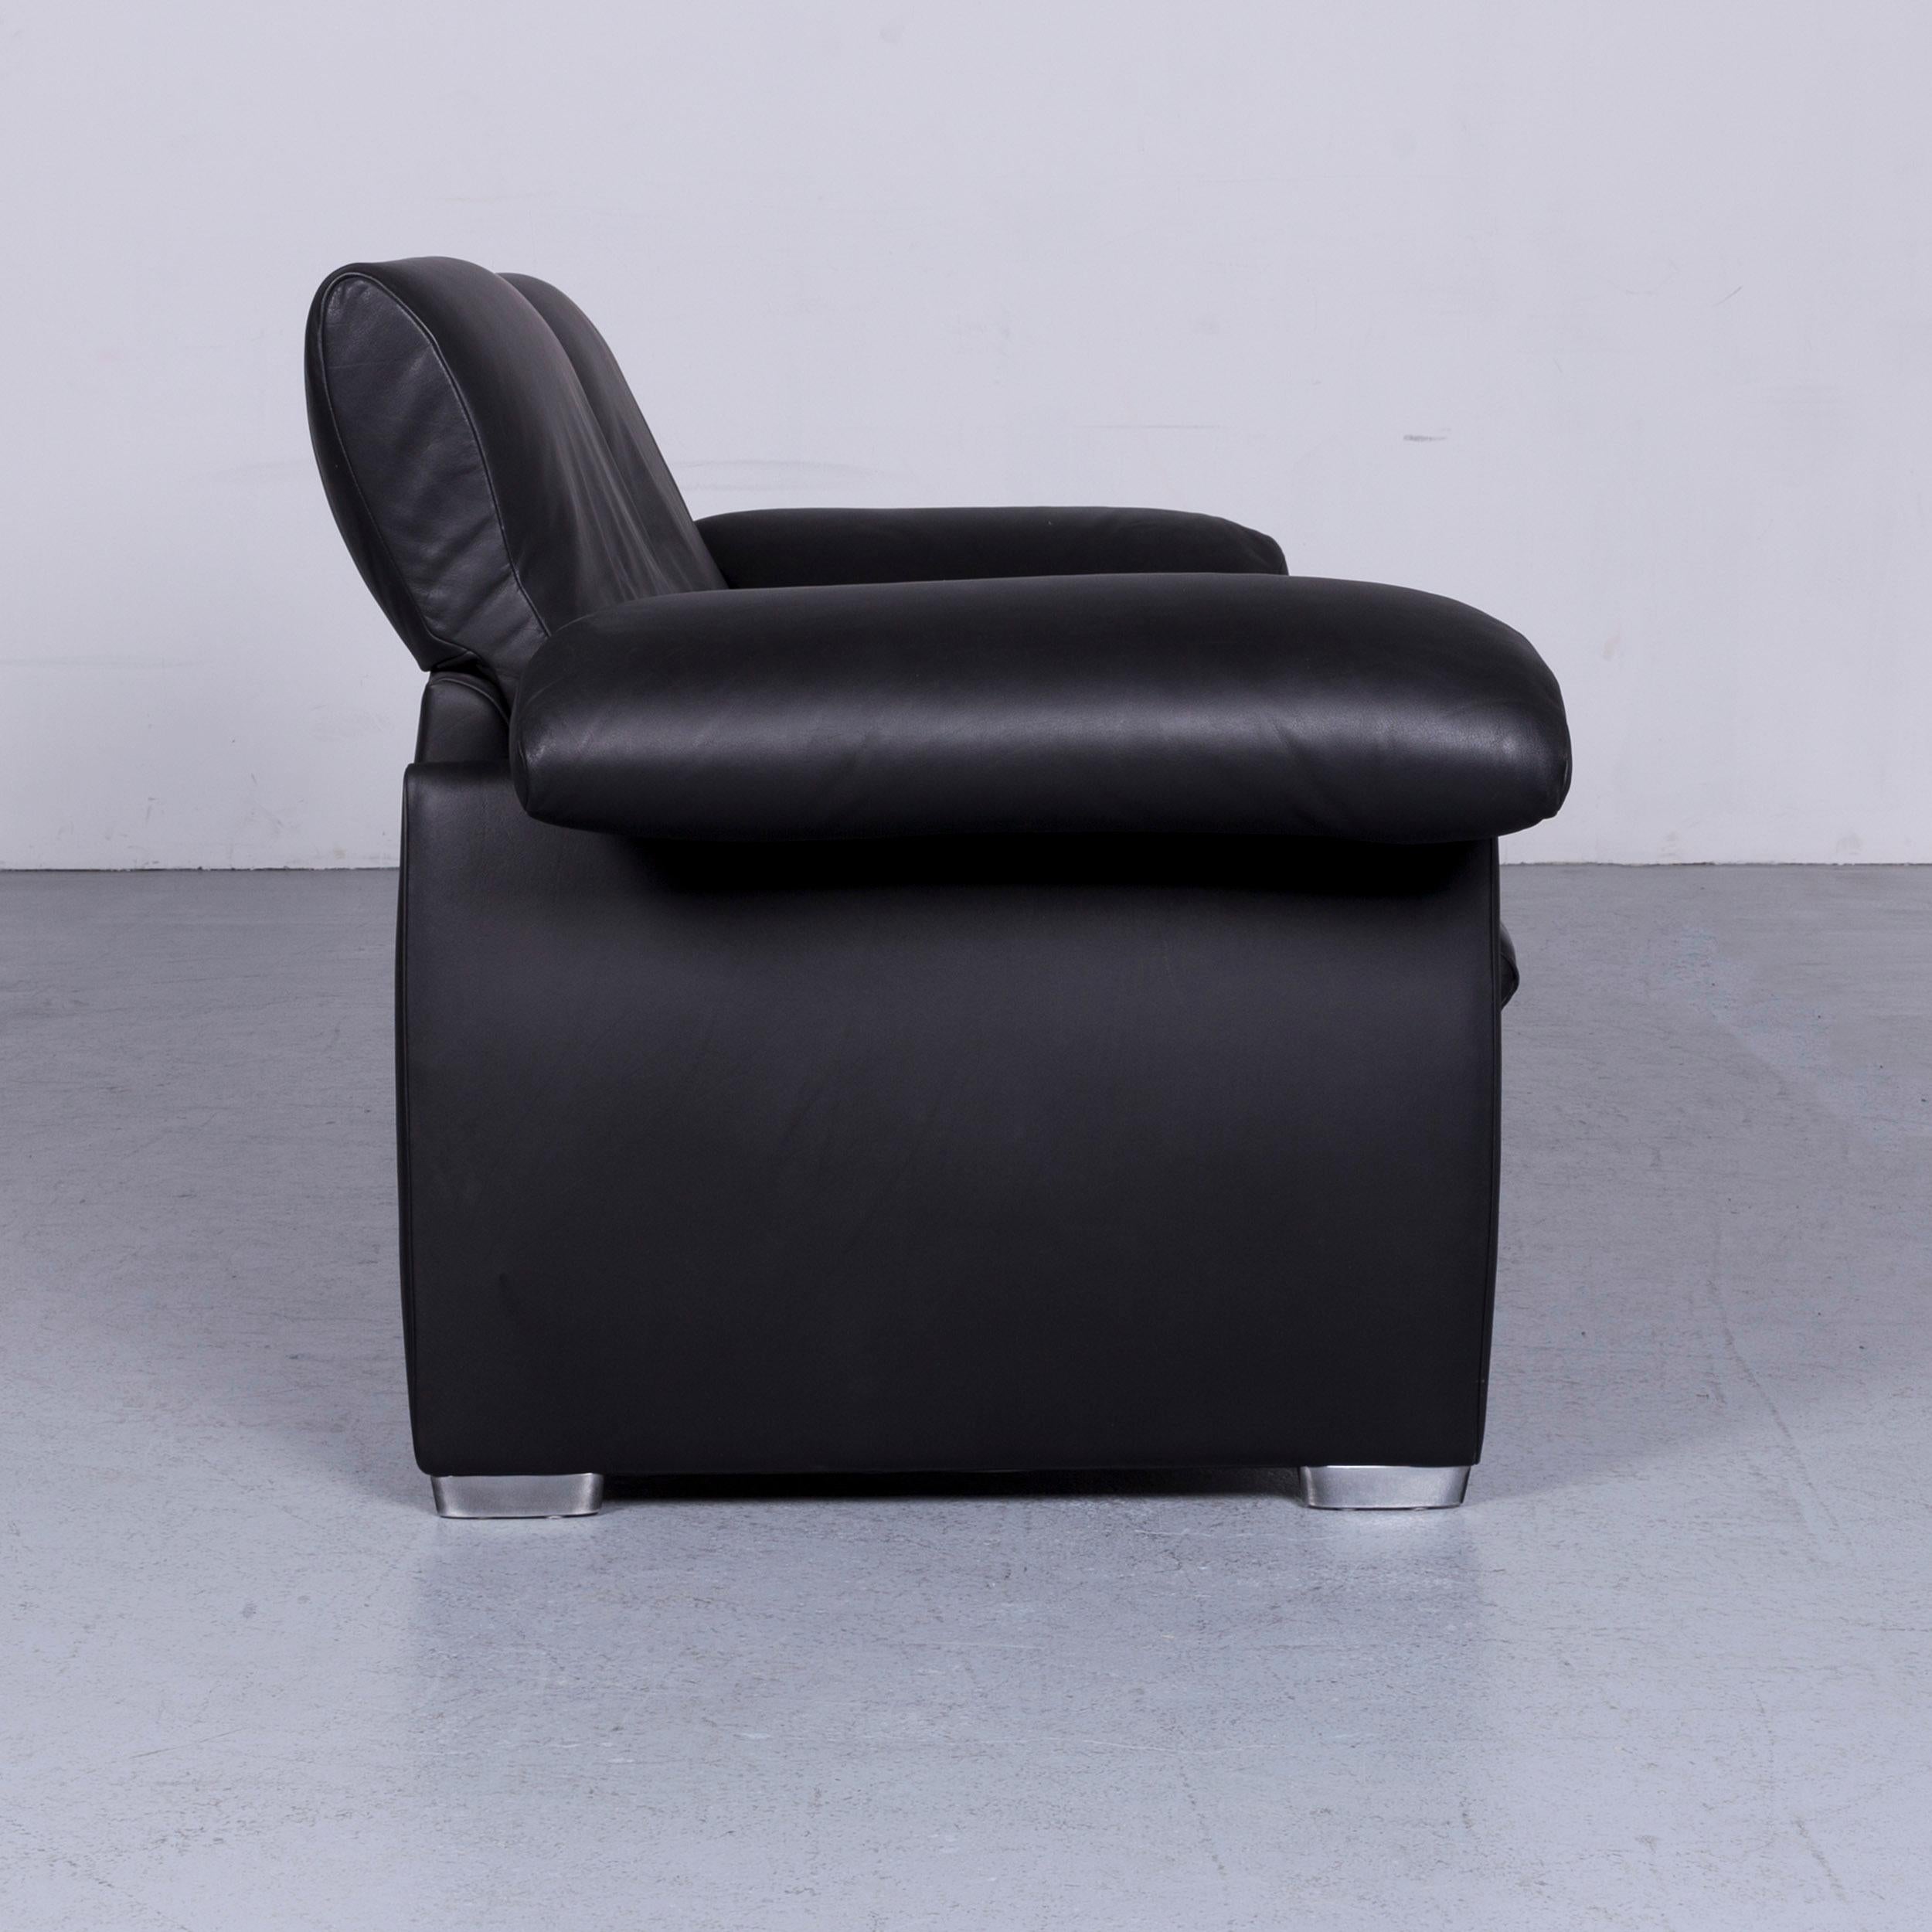 De Sede Ds 10 Designer Sofa Black Leather Three-Seat Couch 3